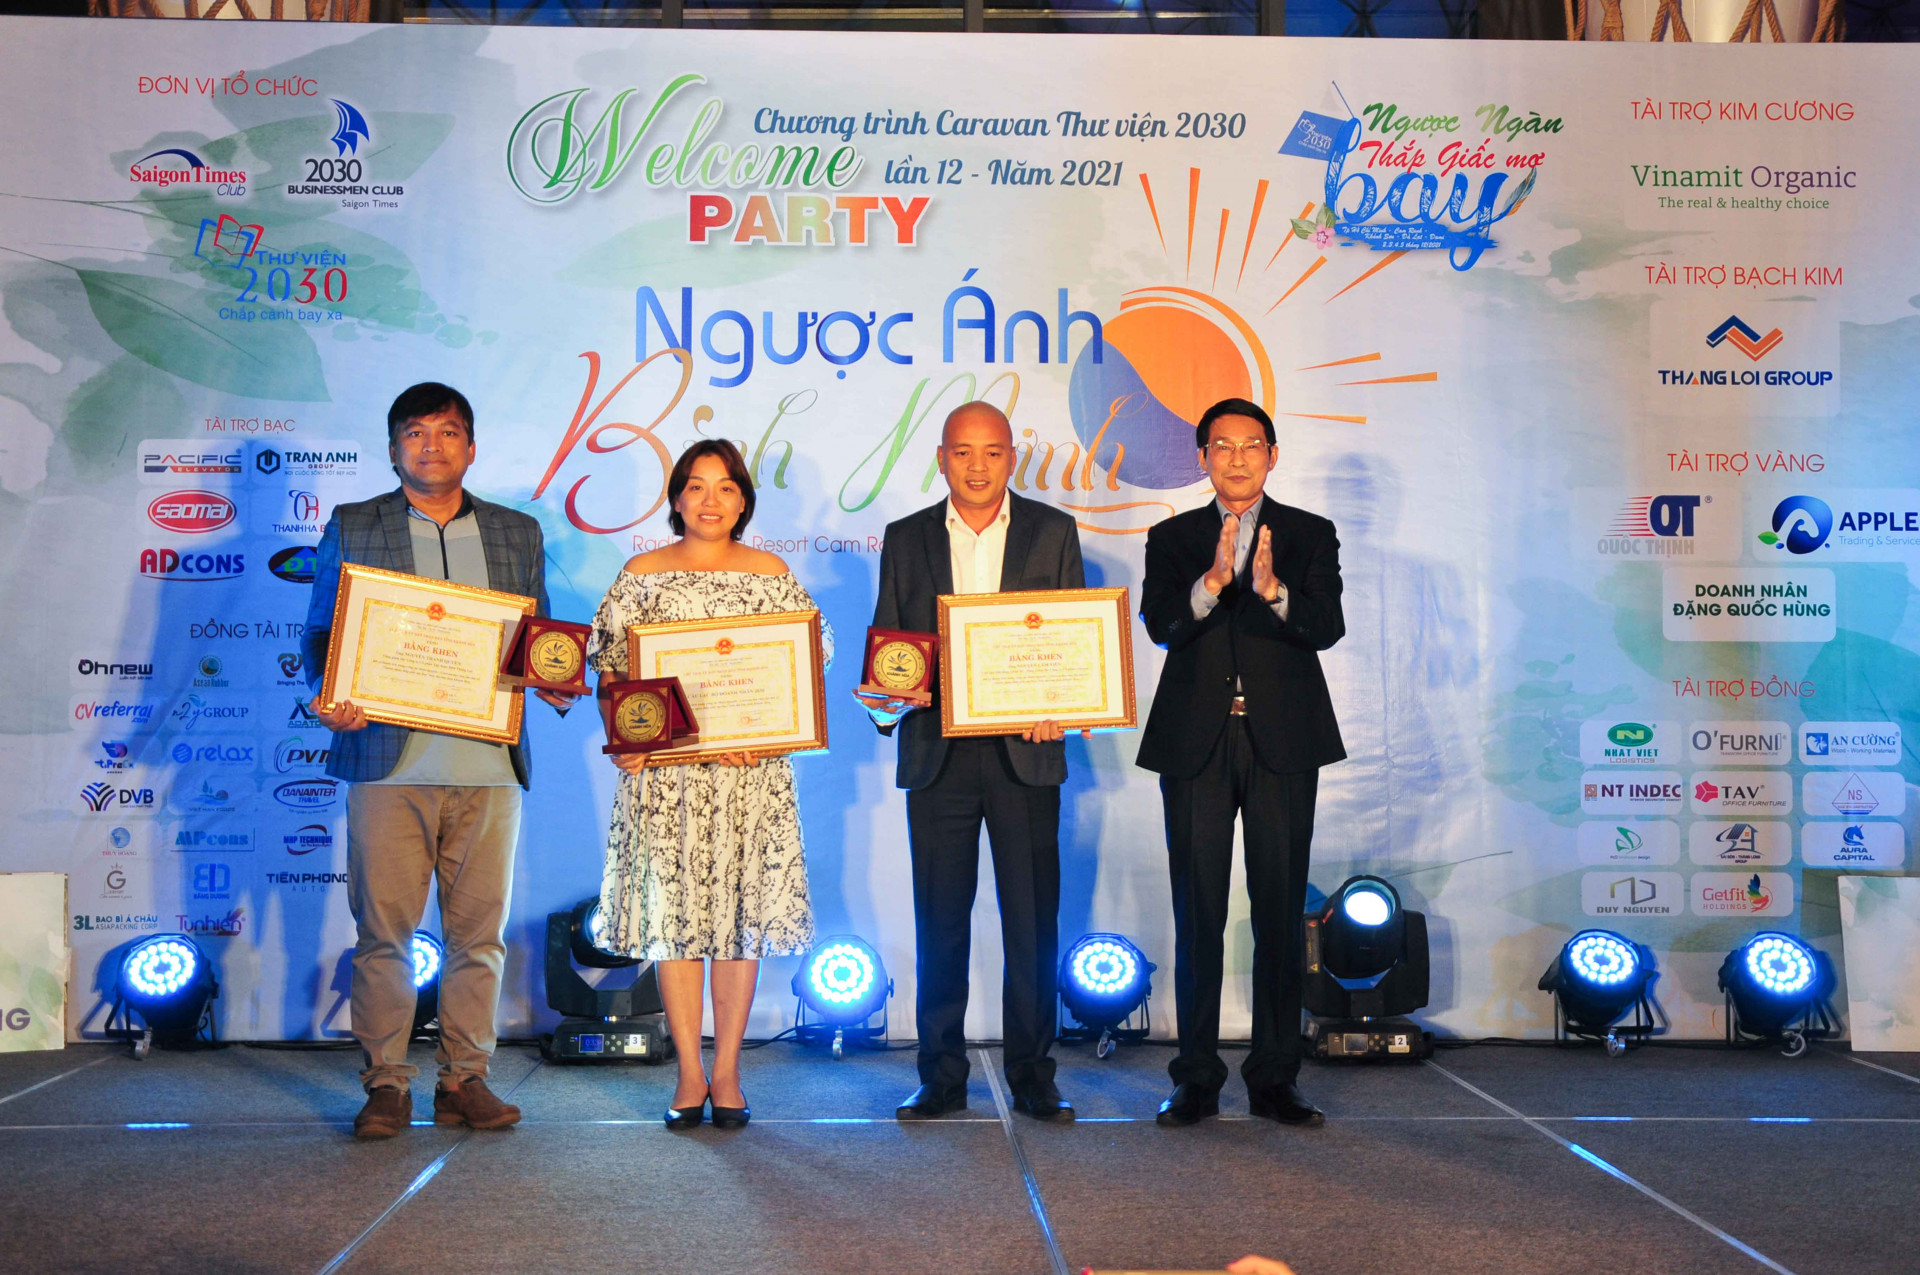 Ông Đinh Văn Thiệu trao bằng khen của UBND tỉnh Khánh Hoà cho Câu lạc bộ doanh nhân Hai Mươi Ba Mươi và hai cá nhân